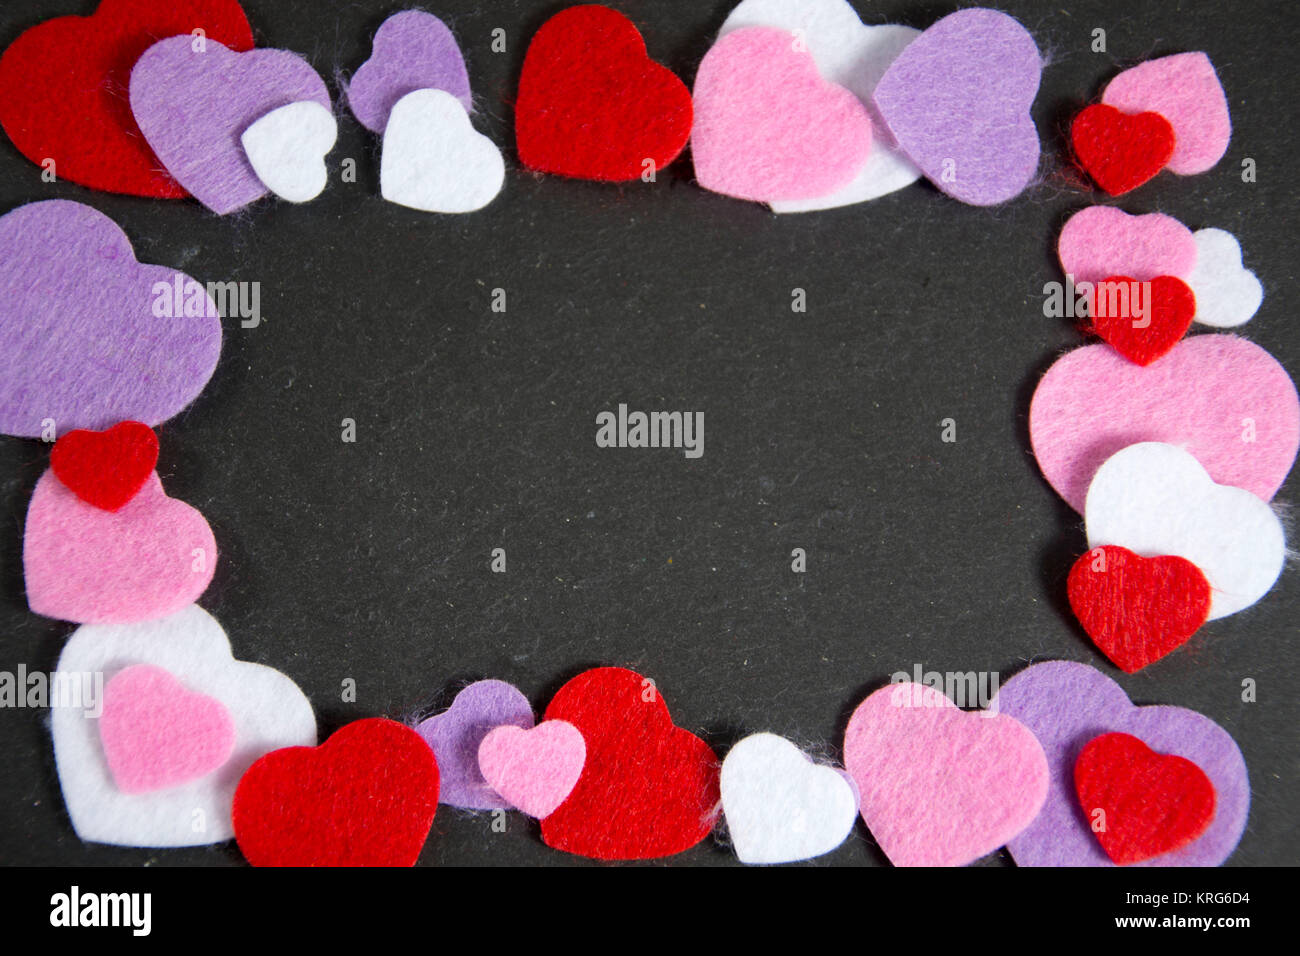 Symbolfoto für den Valentinstag Stock Photo